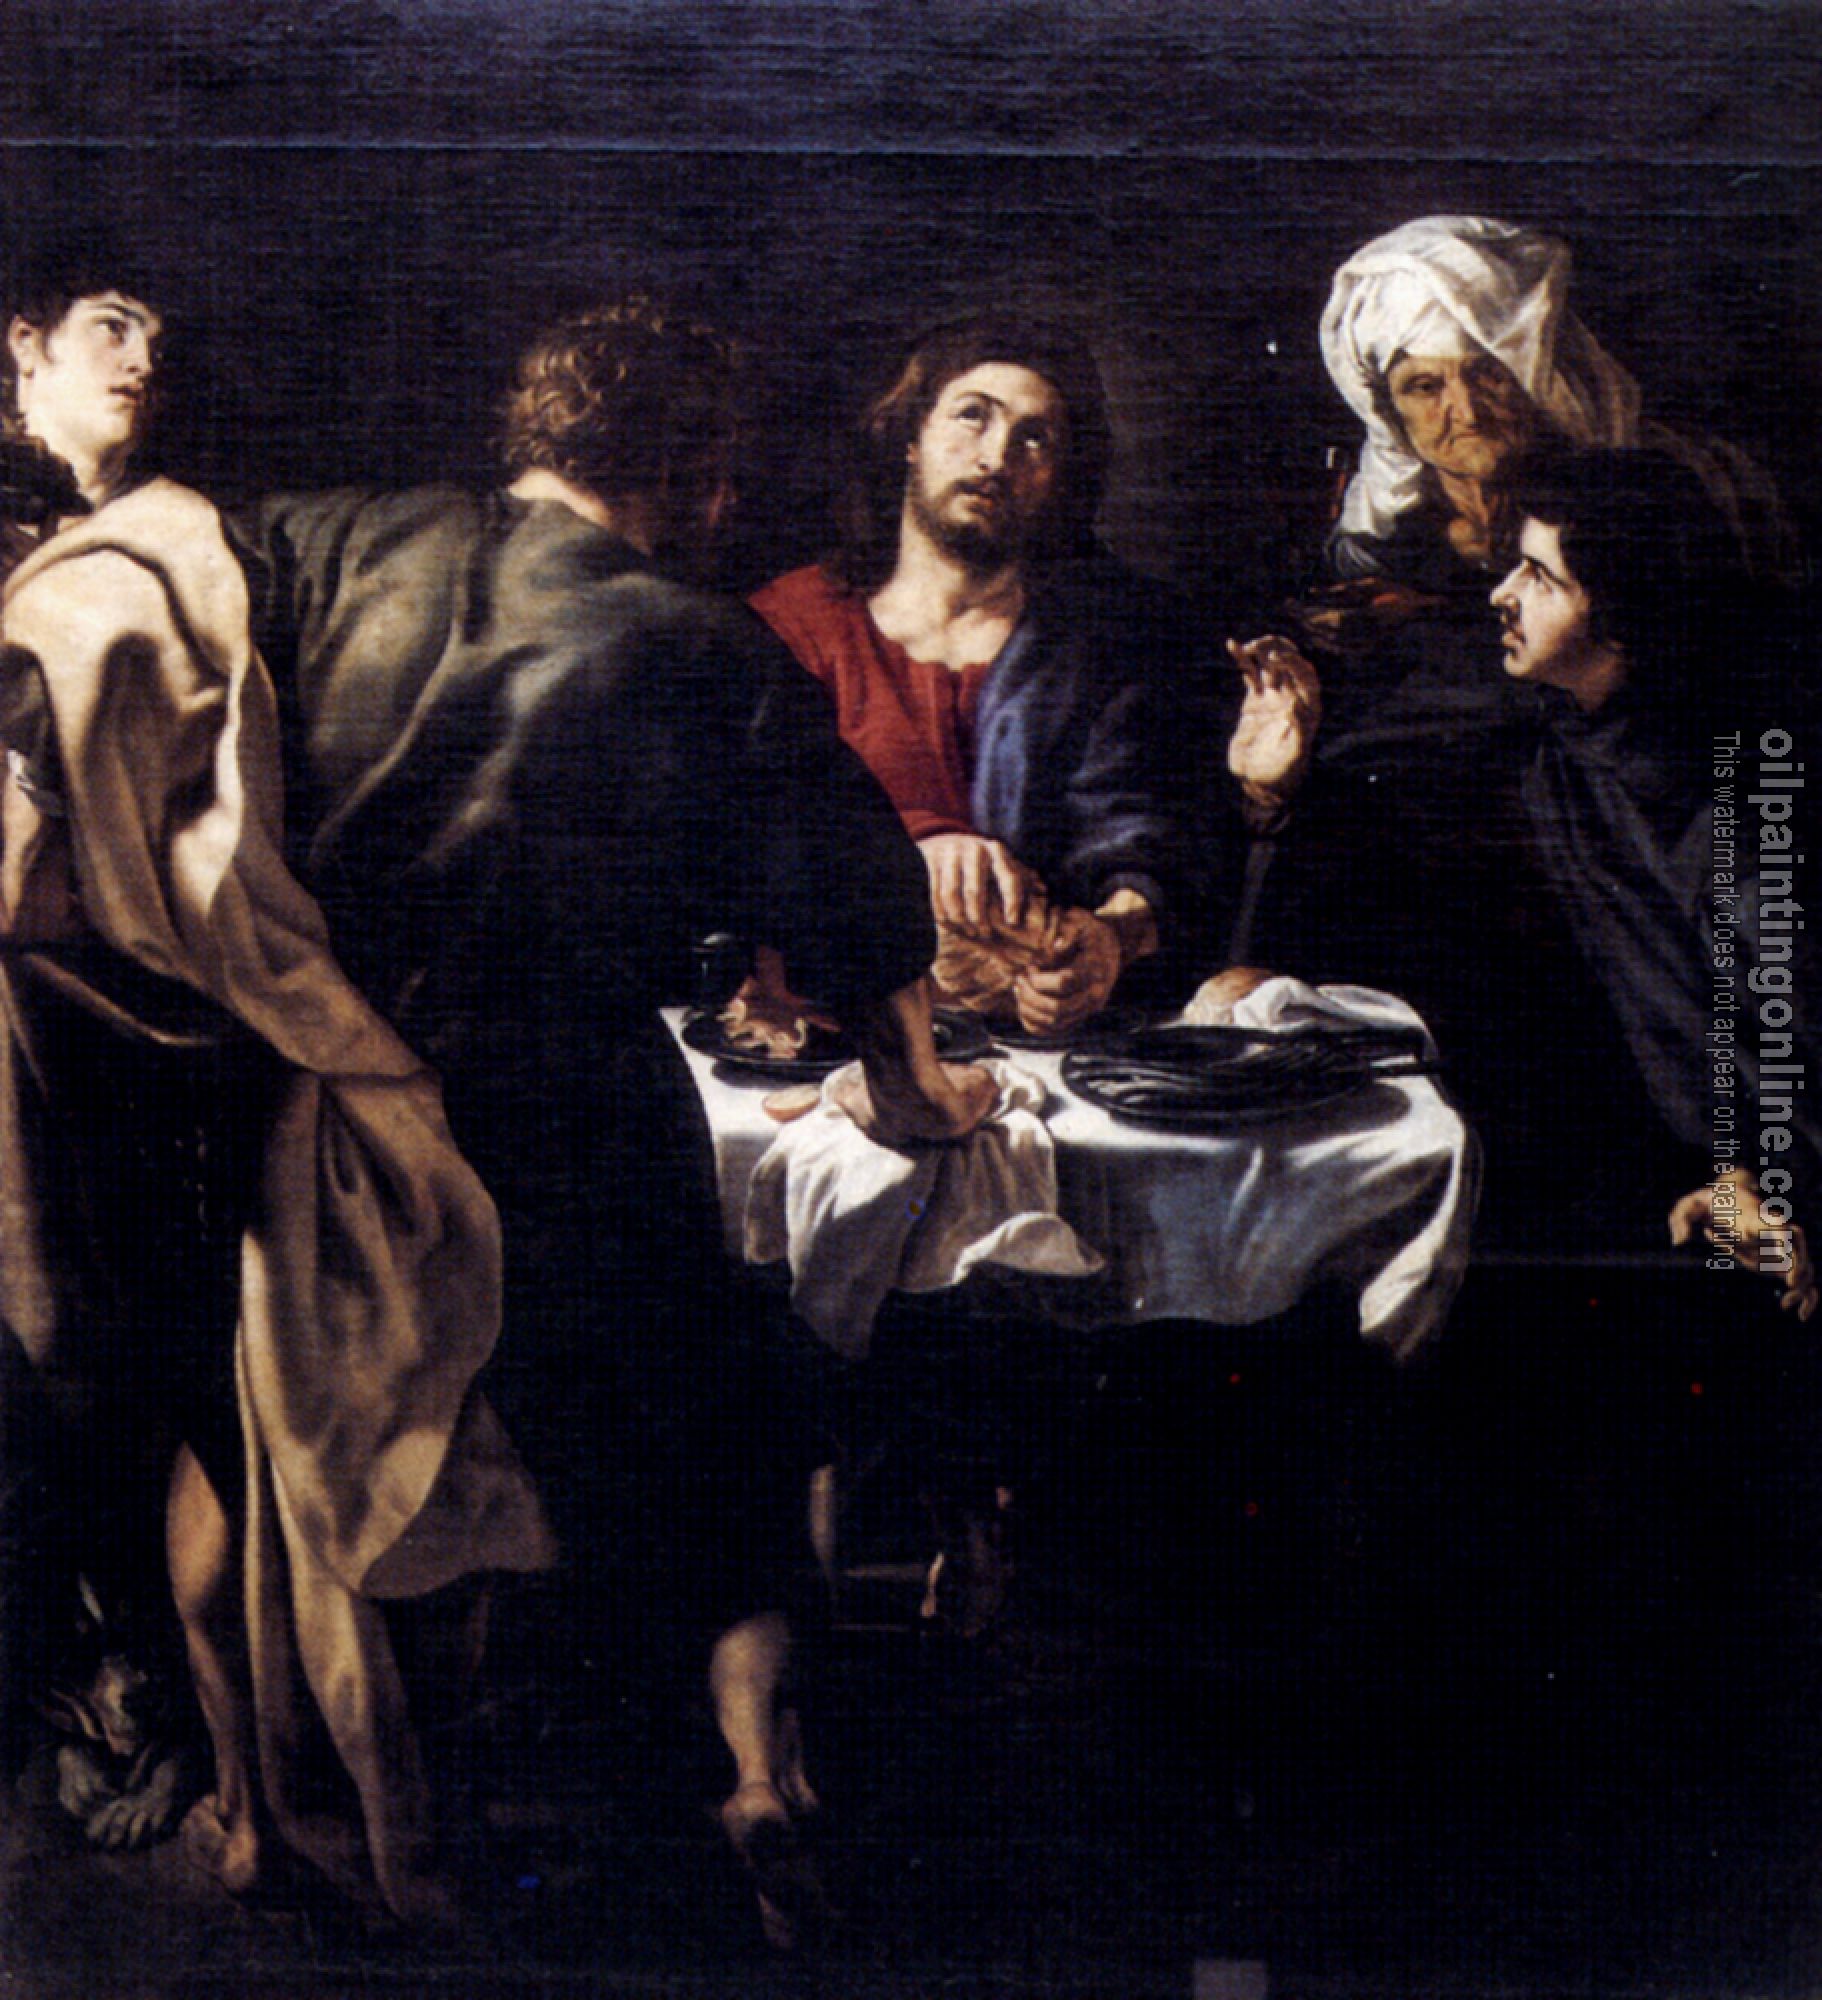 Rubens, Peter Paul - The Supper At Emmaus